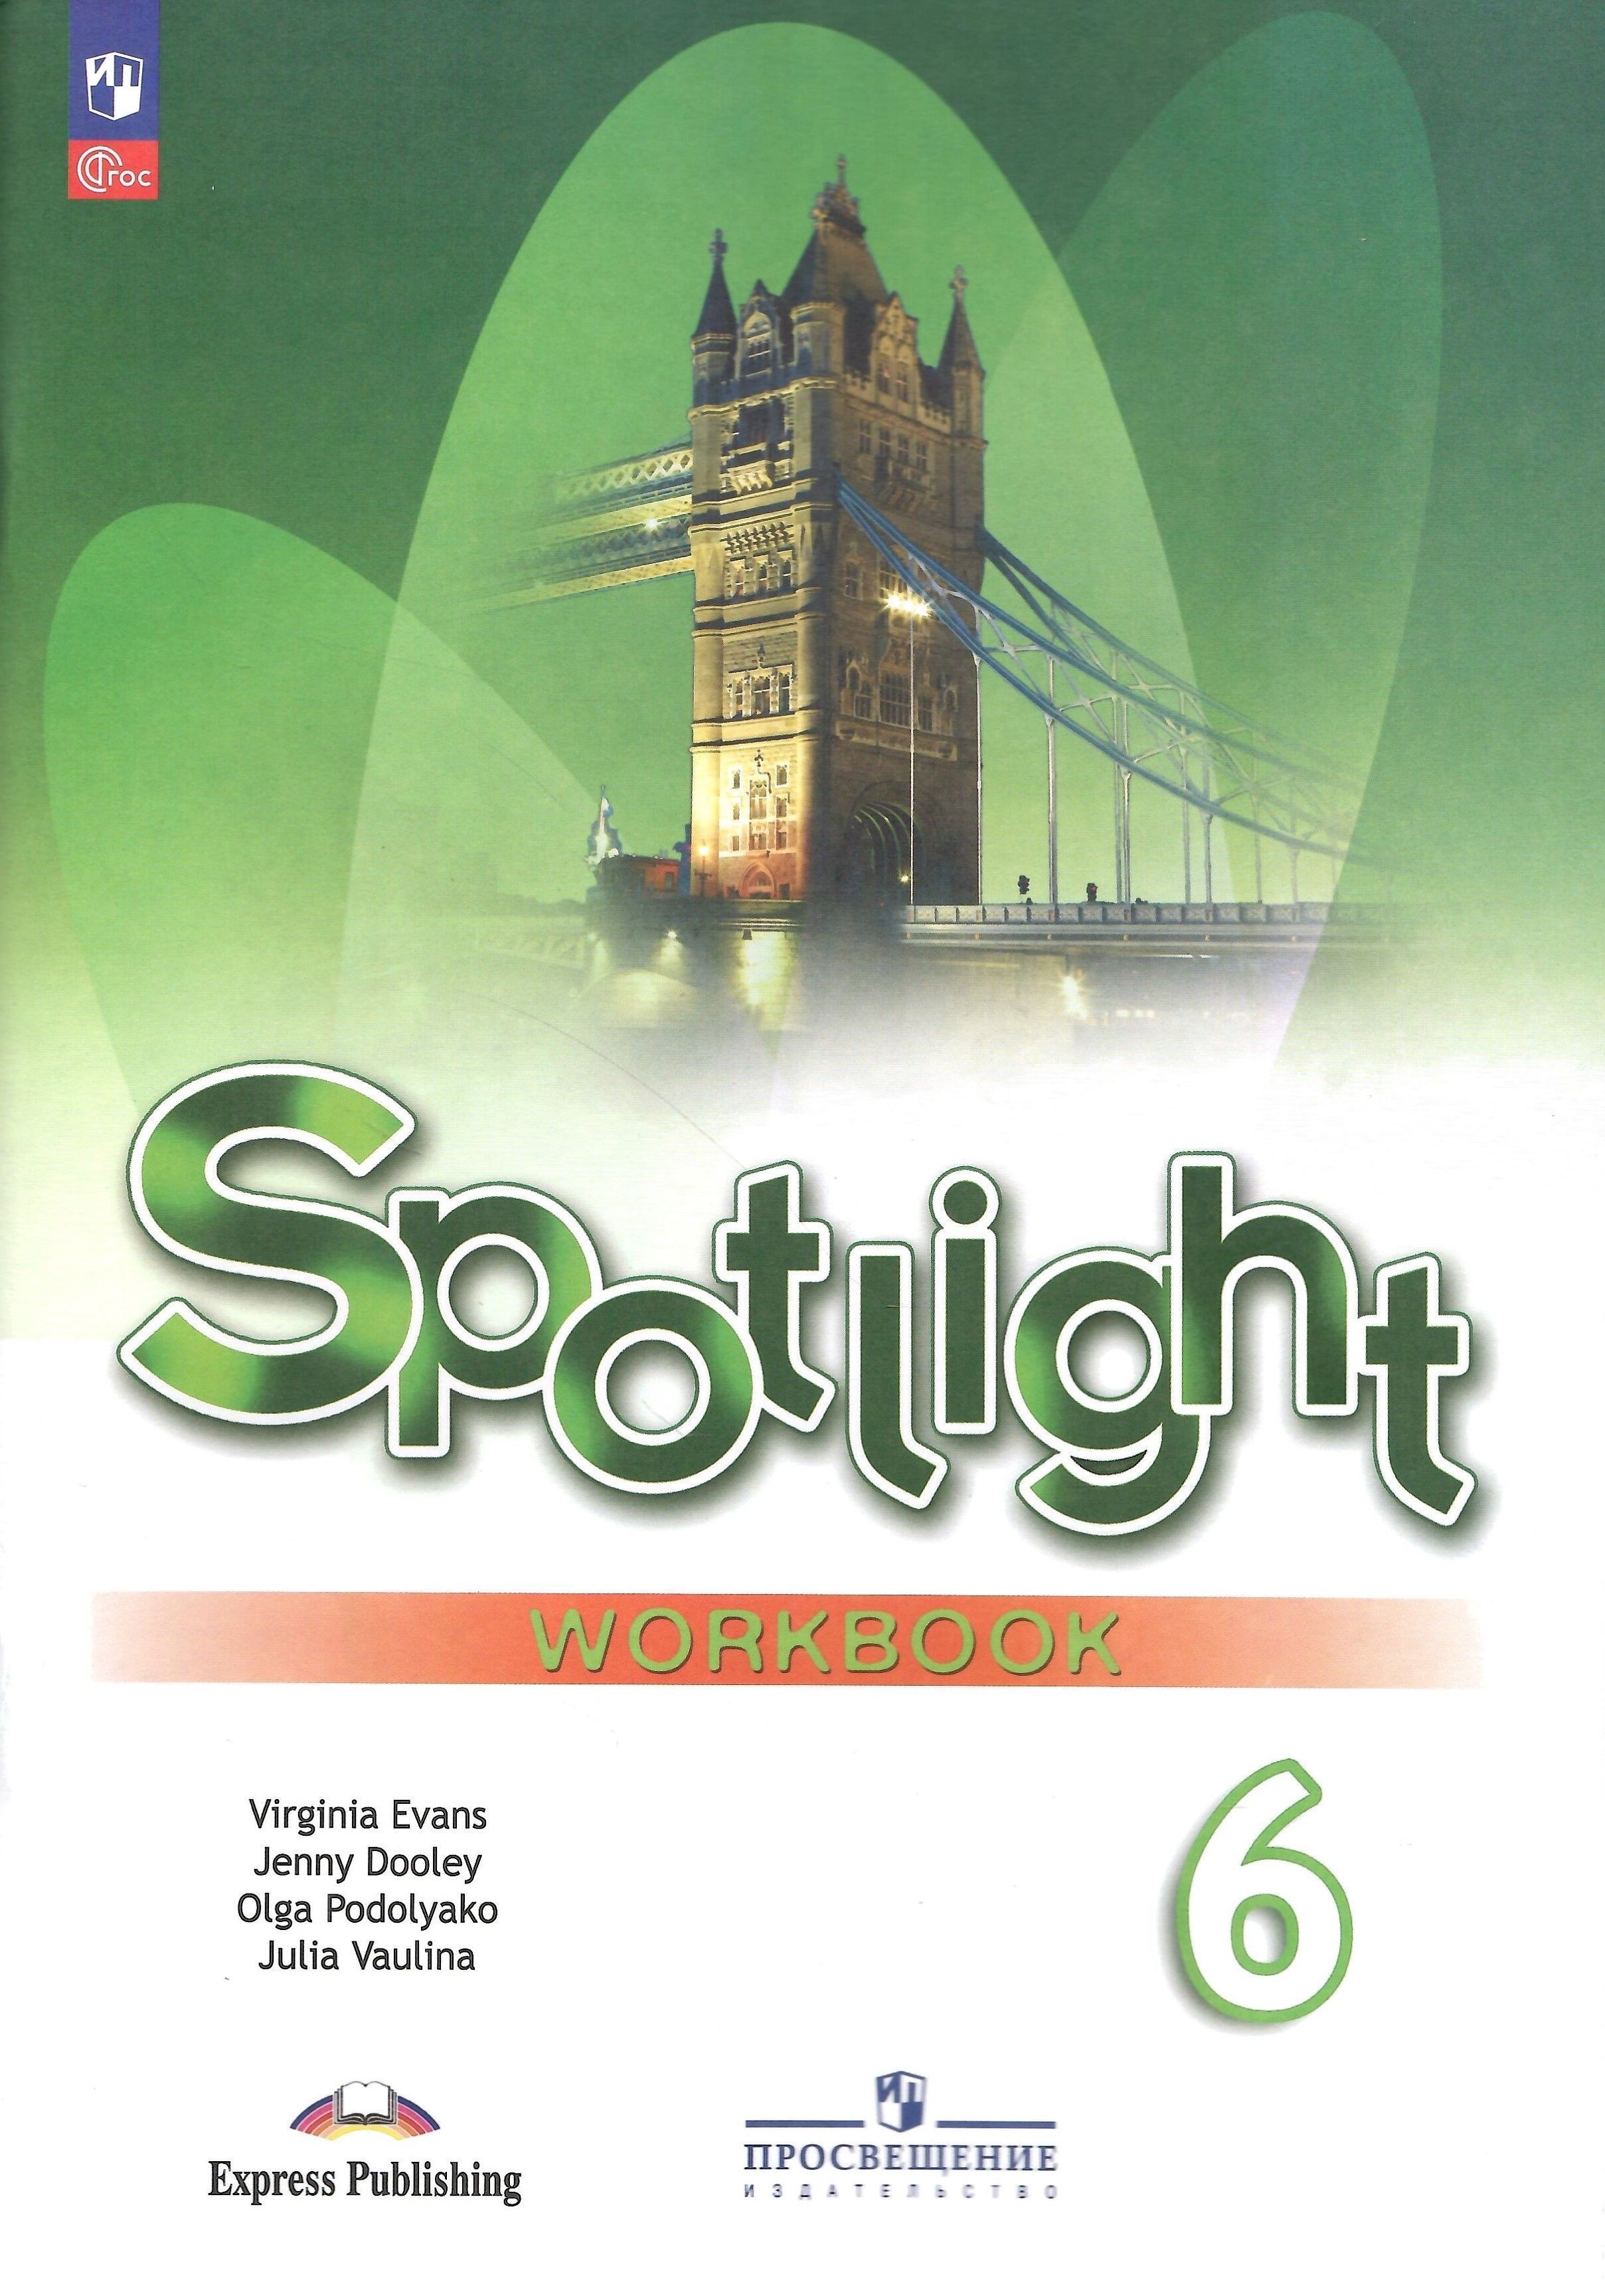 Спотлайт 6 класс 1 часть. Английский язык 11 класс Spotlight ваулина. Spotlight 8 рабочая тетрадь обложка. Workbook 6 класс Spotlight. Тетрадь по английскому языку 11 класс Spotlight.